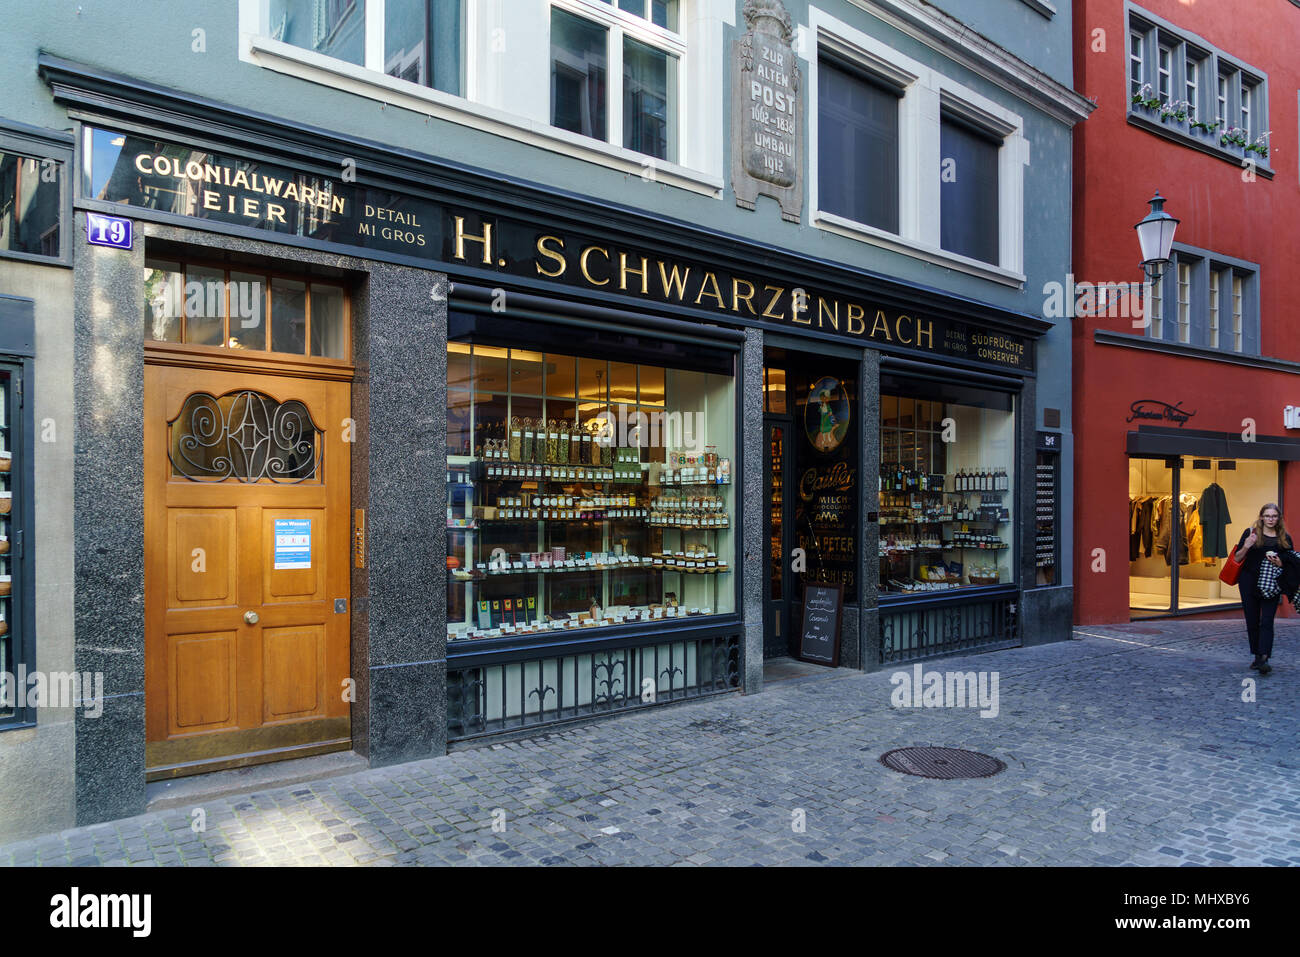 Zurigo, Svizzera - 16 Ottobre 2017: Vetrine e un cartello della più antica caffetteria Schwarzenbach Foto Stock